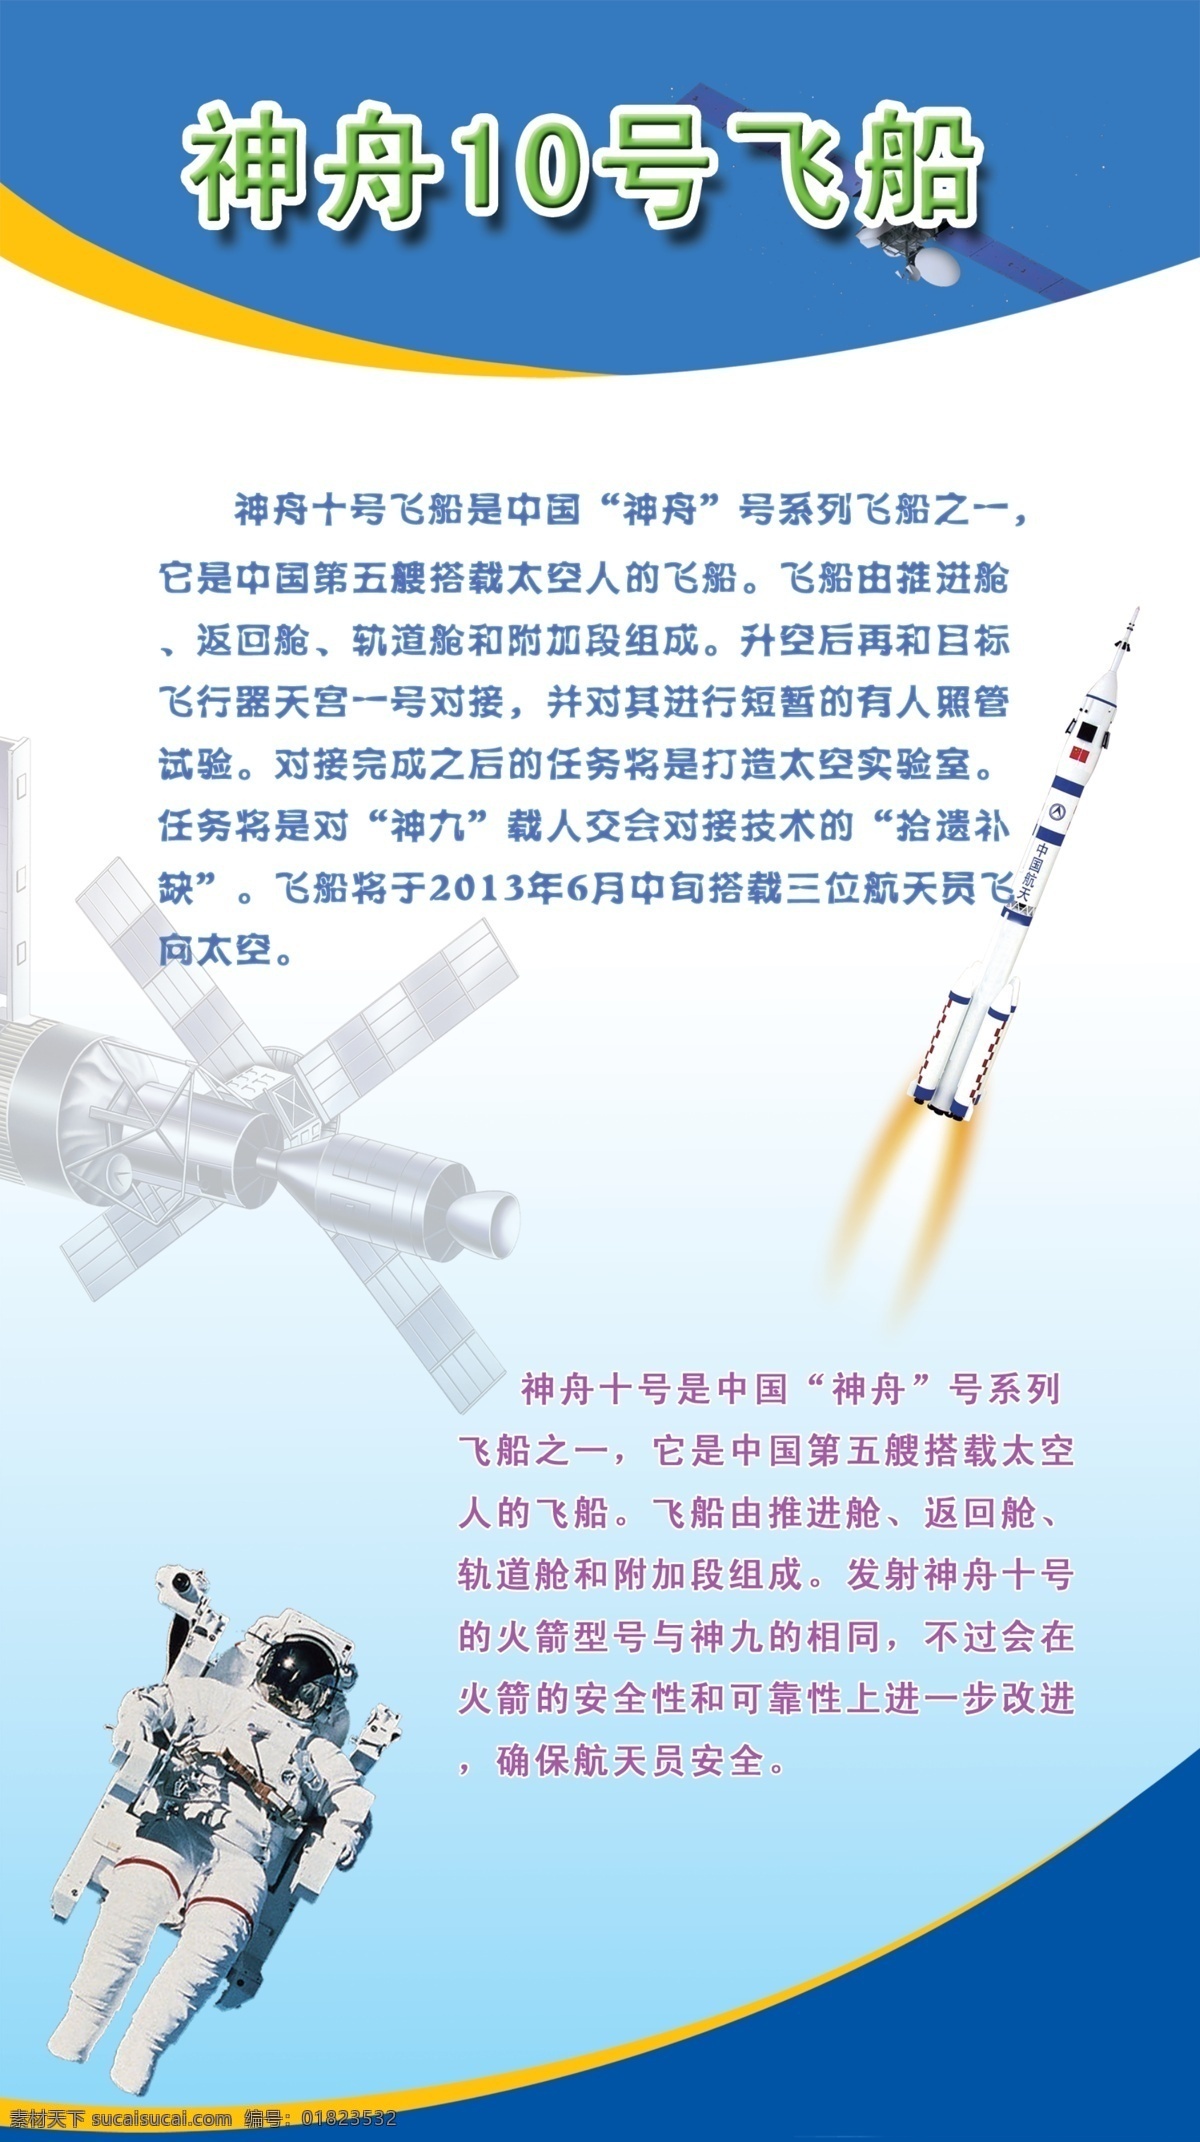 中国航天 科技 展板 航天 神舟飞船 卫星 神舟10号 展板模板 广告设计模板 源文件